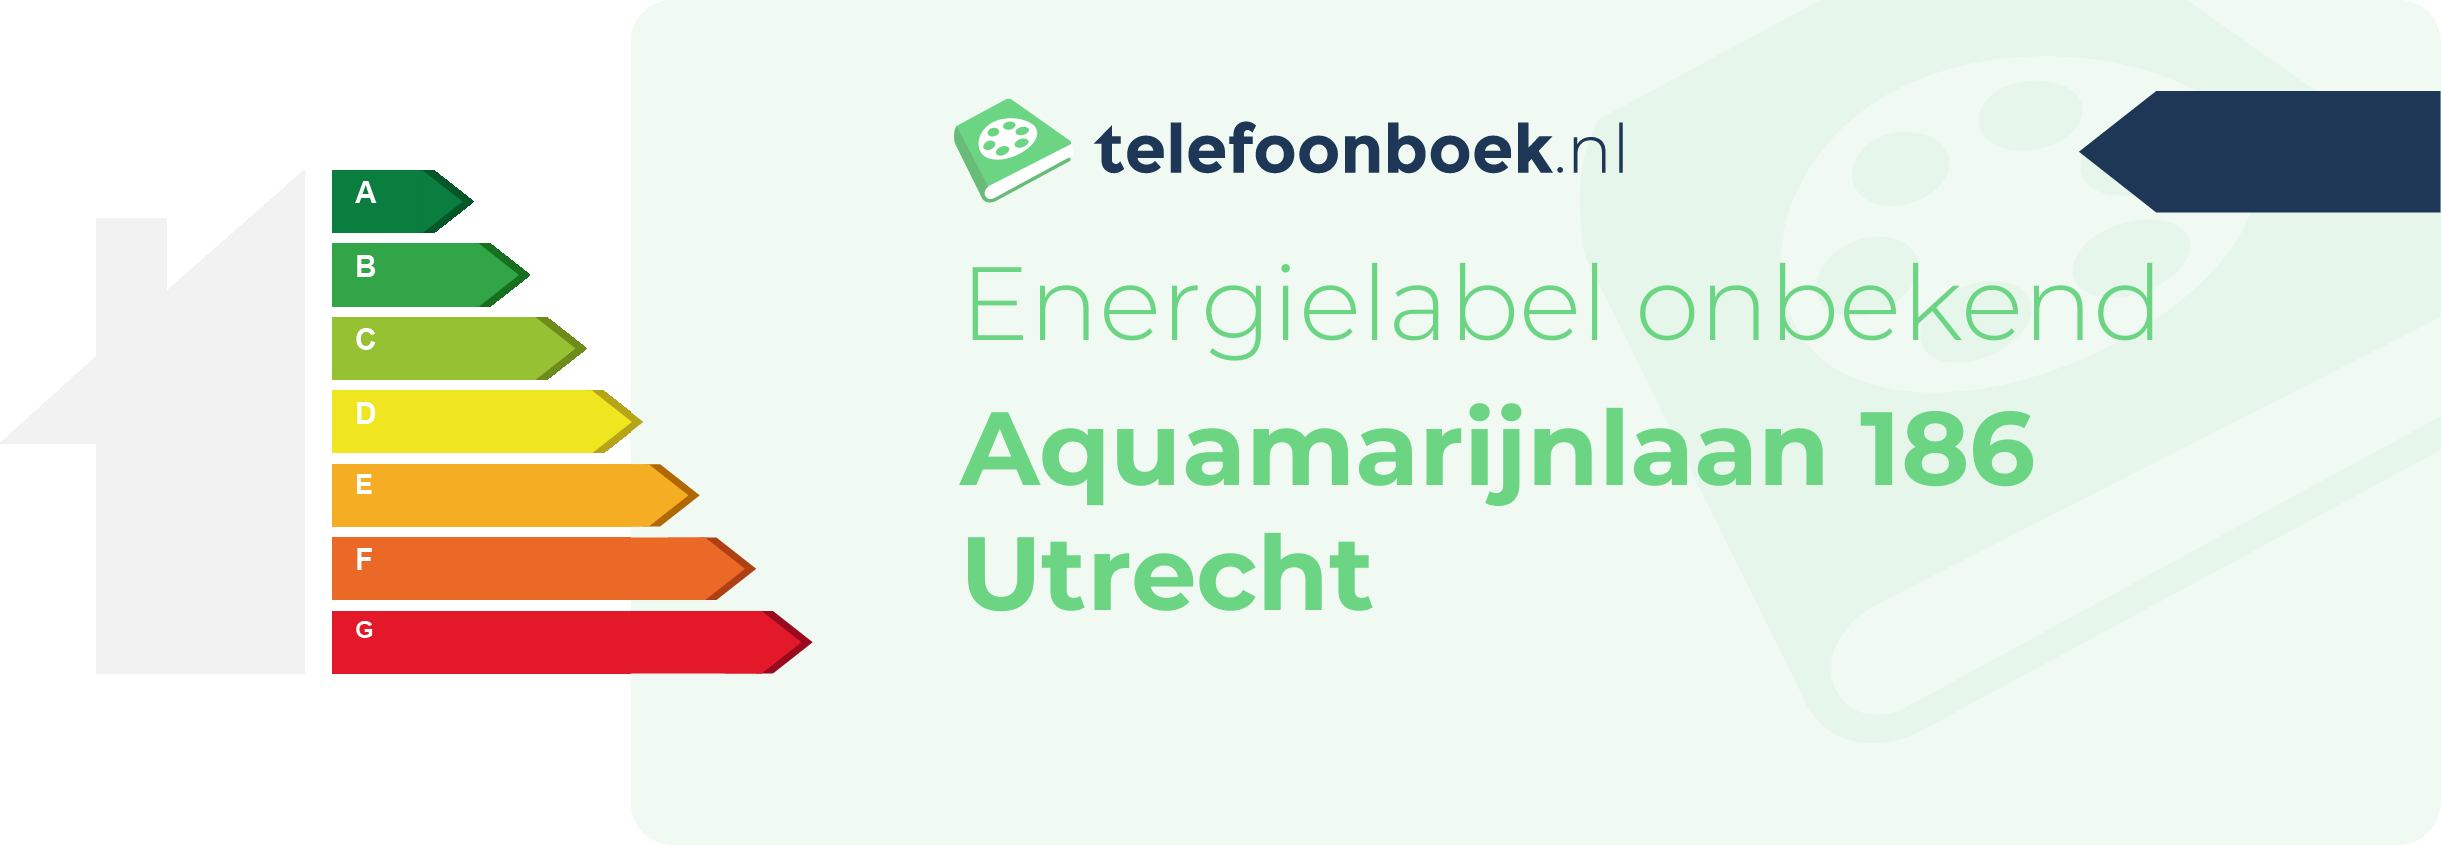 Energielabel Aquamarijnlaan 186 Utrecht